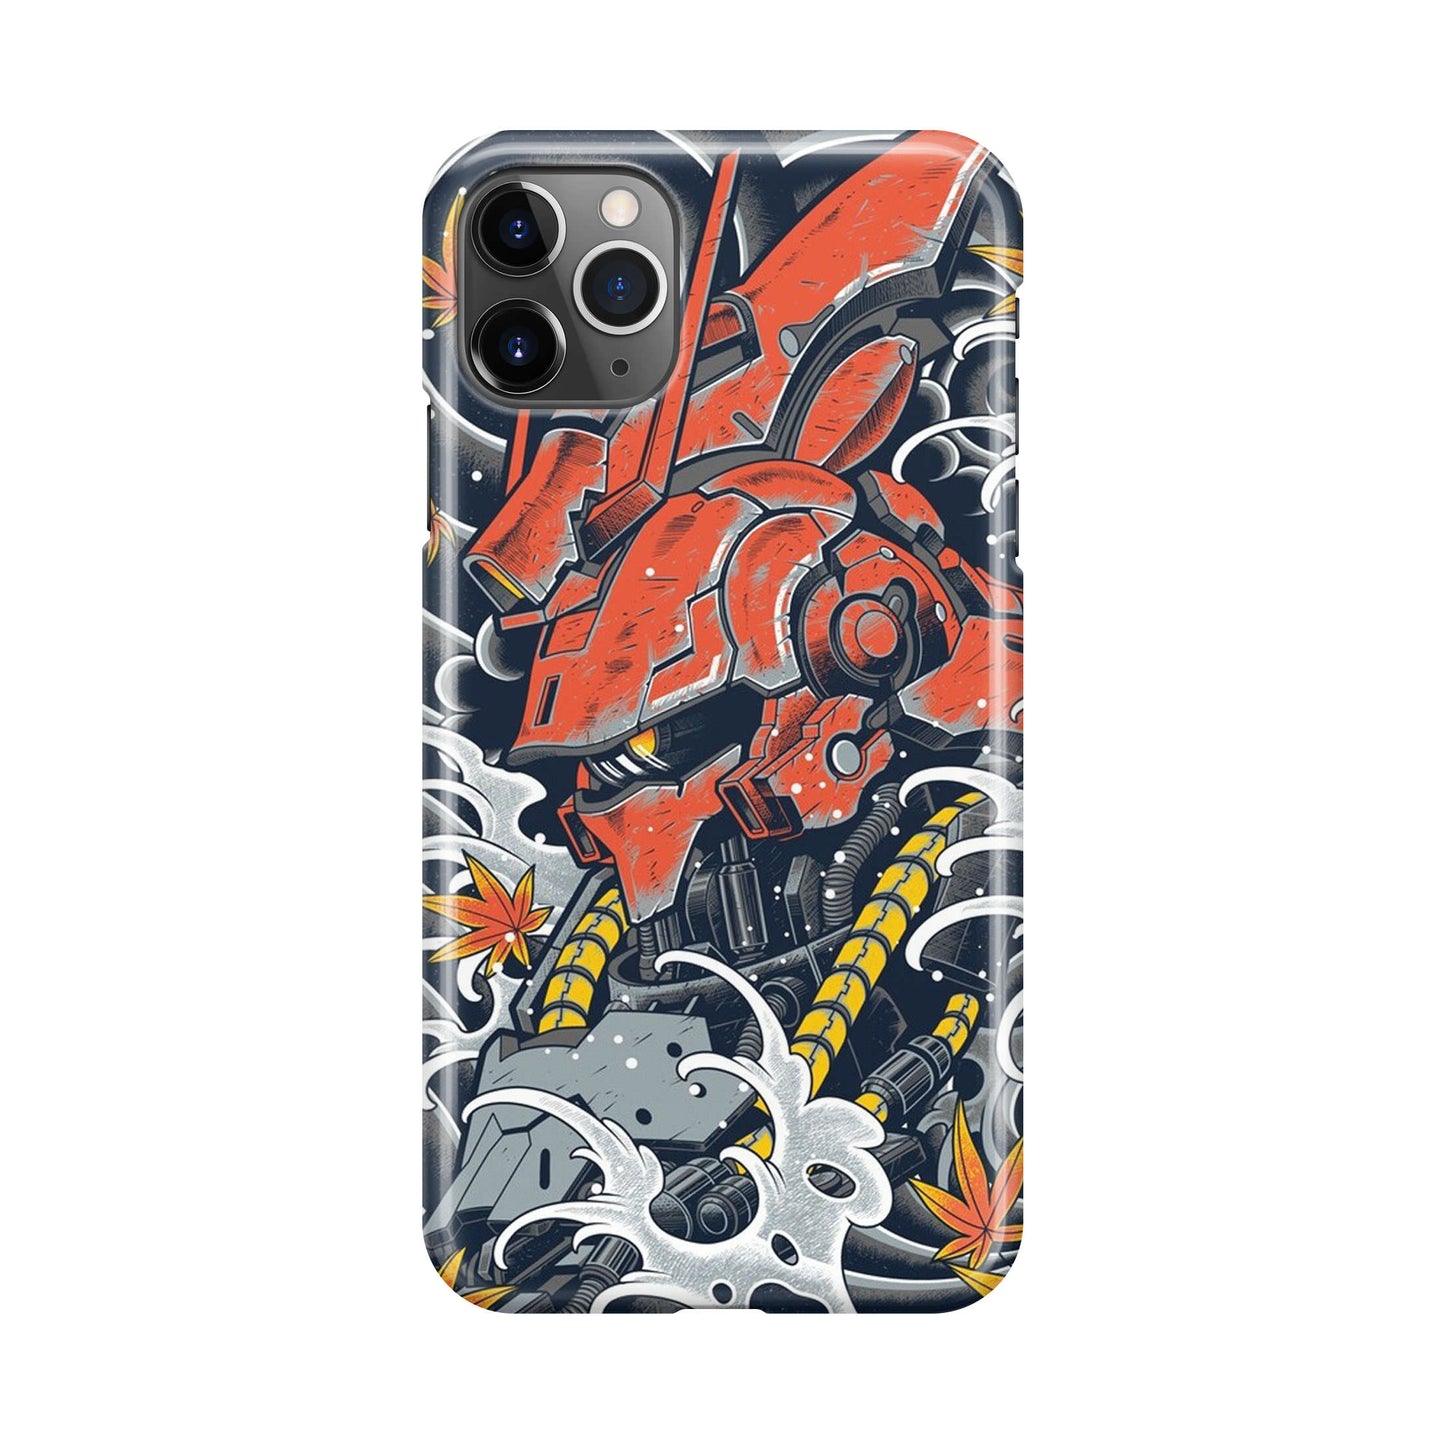 Sazabi Awesome Art iPhone 11 Pro Max Case